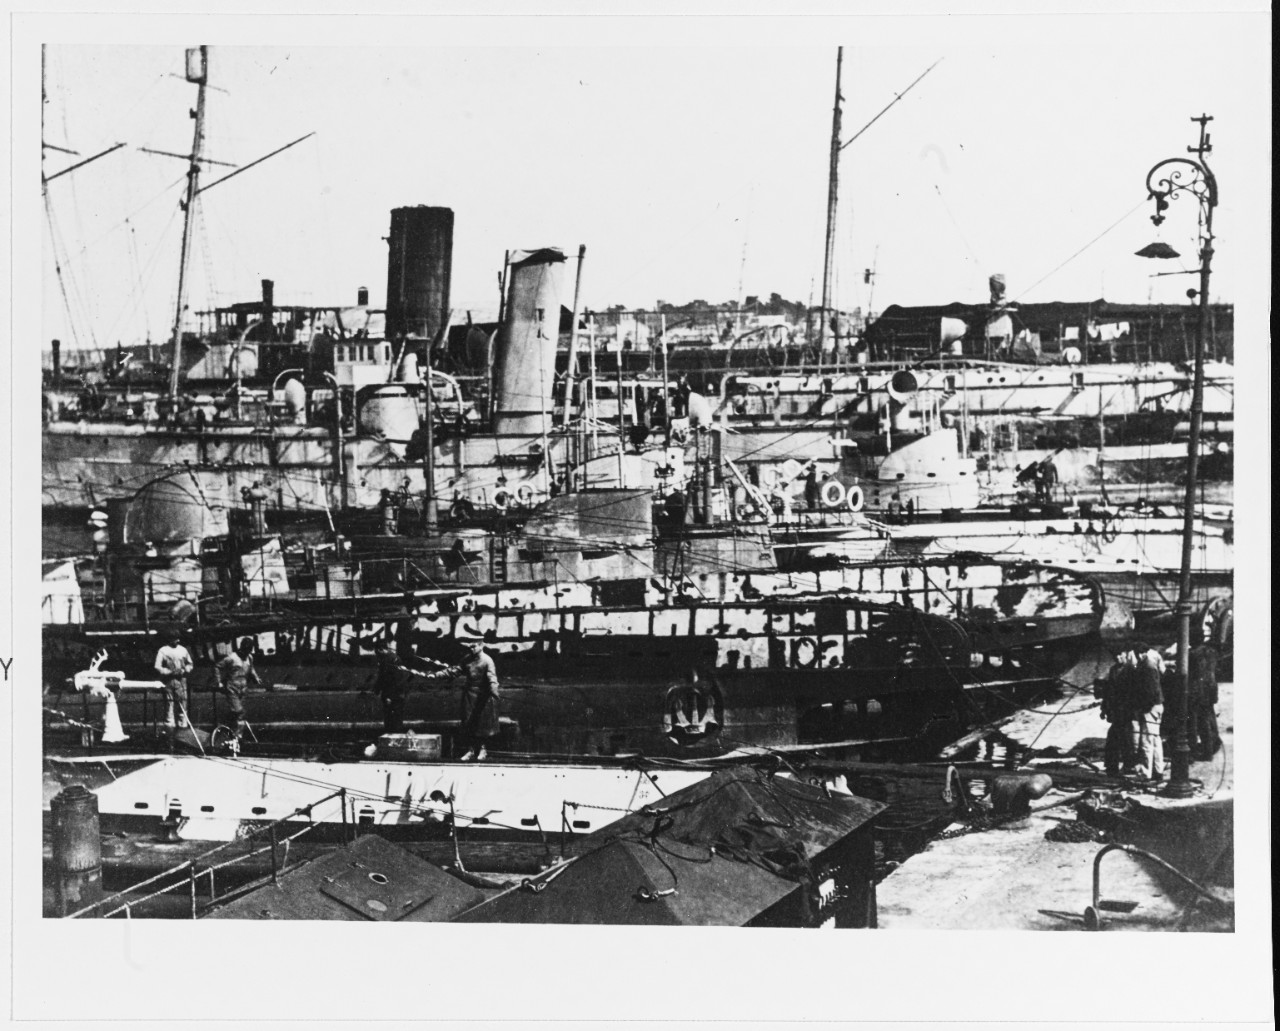 Ex-Austrian ships at Pola, circa 1919.